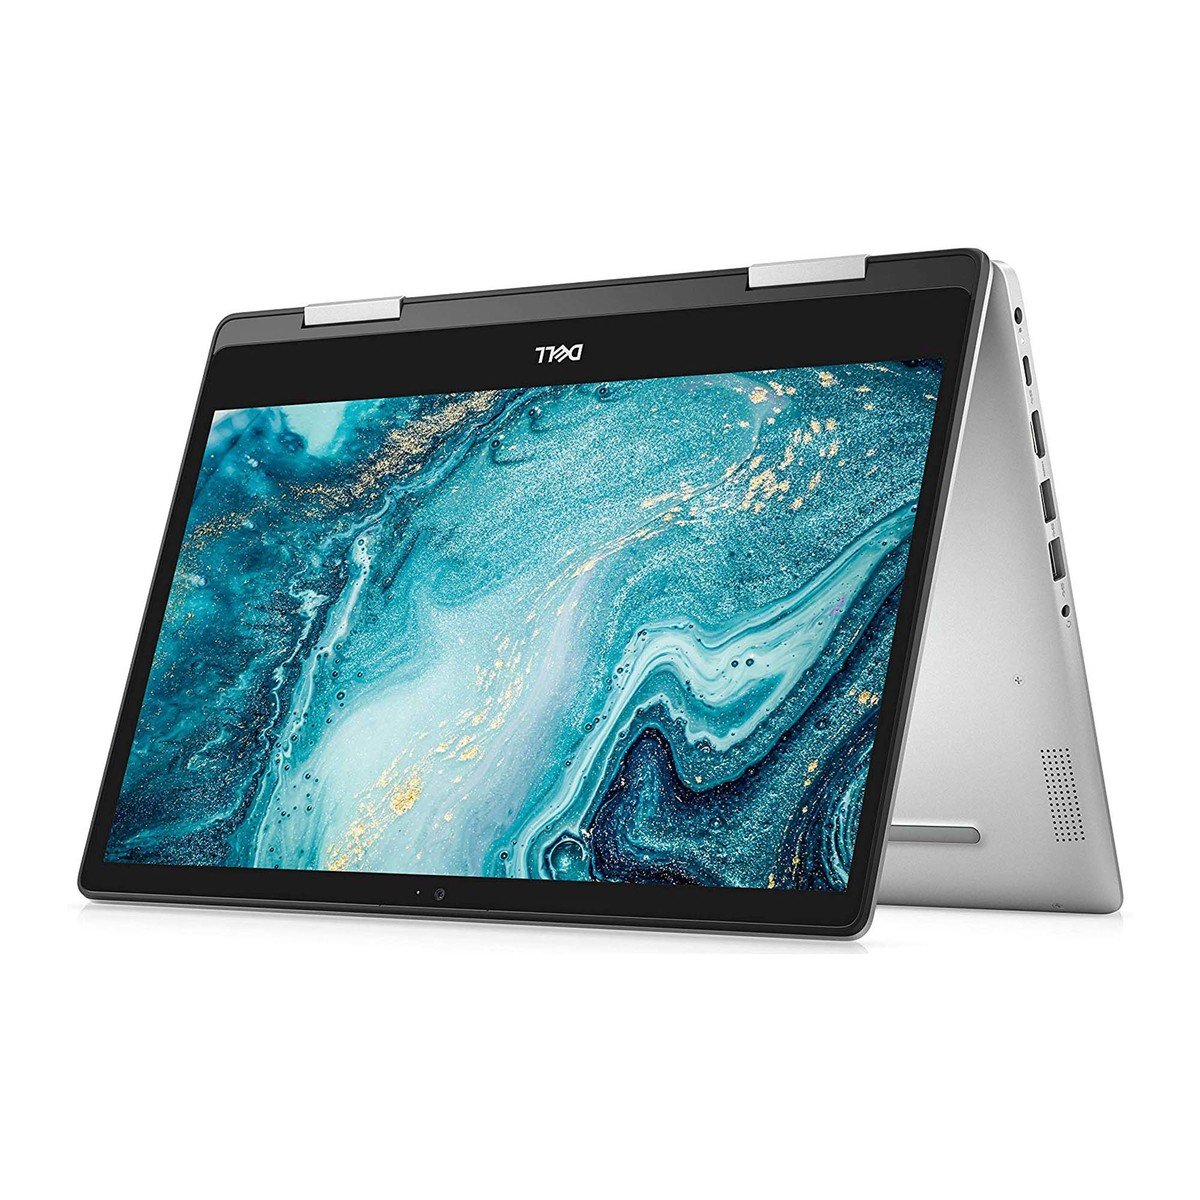 Dell Inspiron 2in1 Laptop 5491 Core i7-10510U,16GB,512GB SSD,GeForce MX230 2GB,14inch FHD,Windows 10,Silver